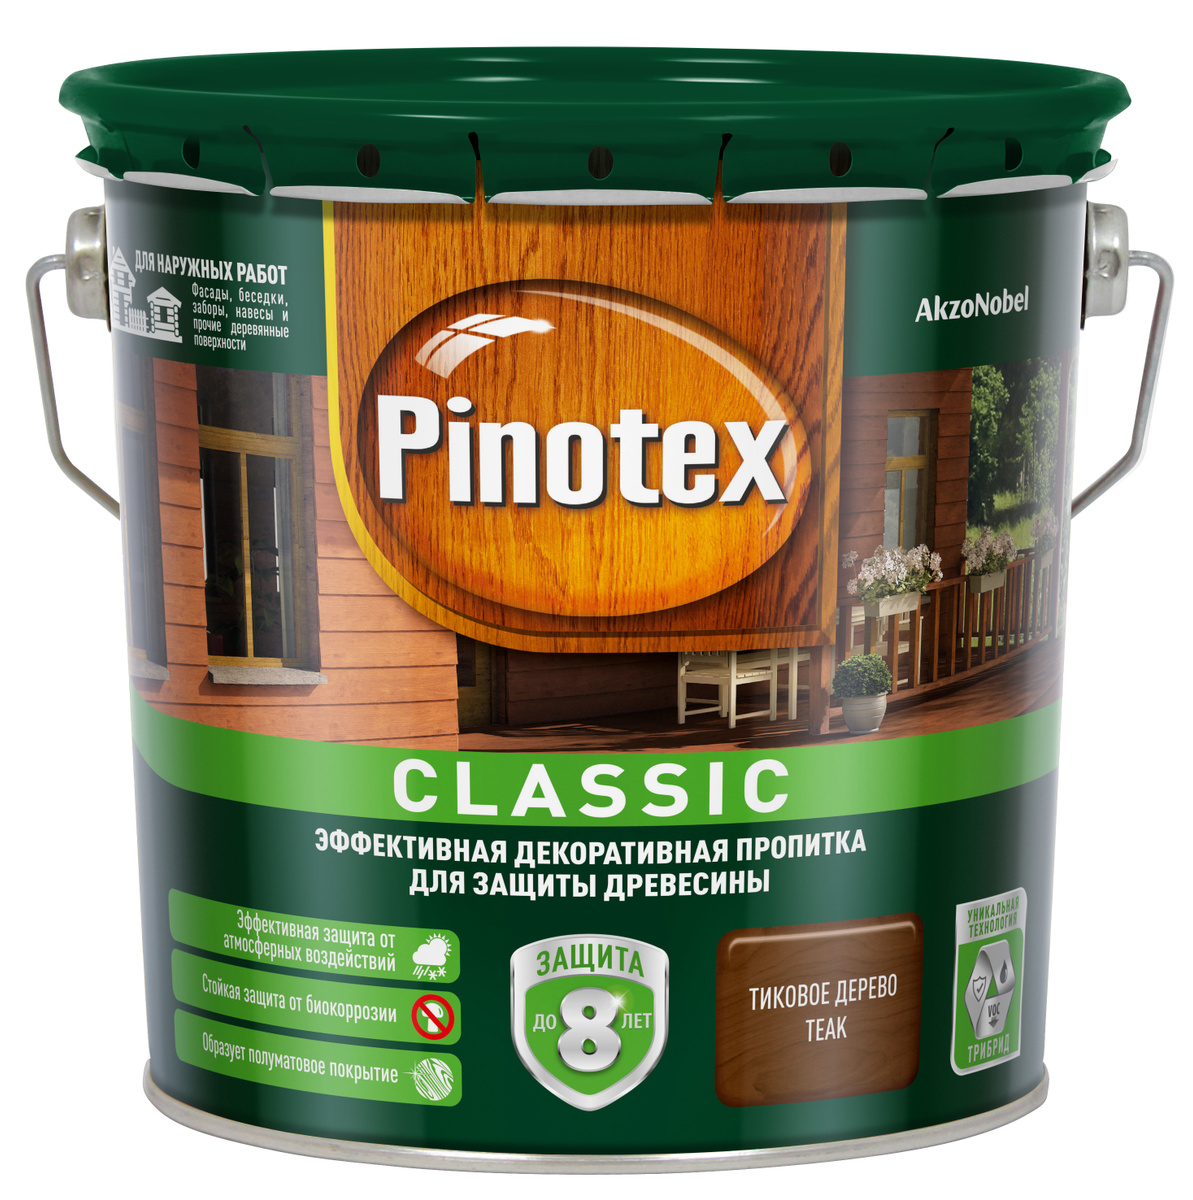 Купить pinotex classic (пинотекс классик) декоративный антисептик для деревянных поверхностей от официального дилера PINOTEX (ПИНОТЕКС)